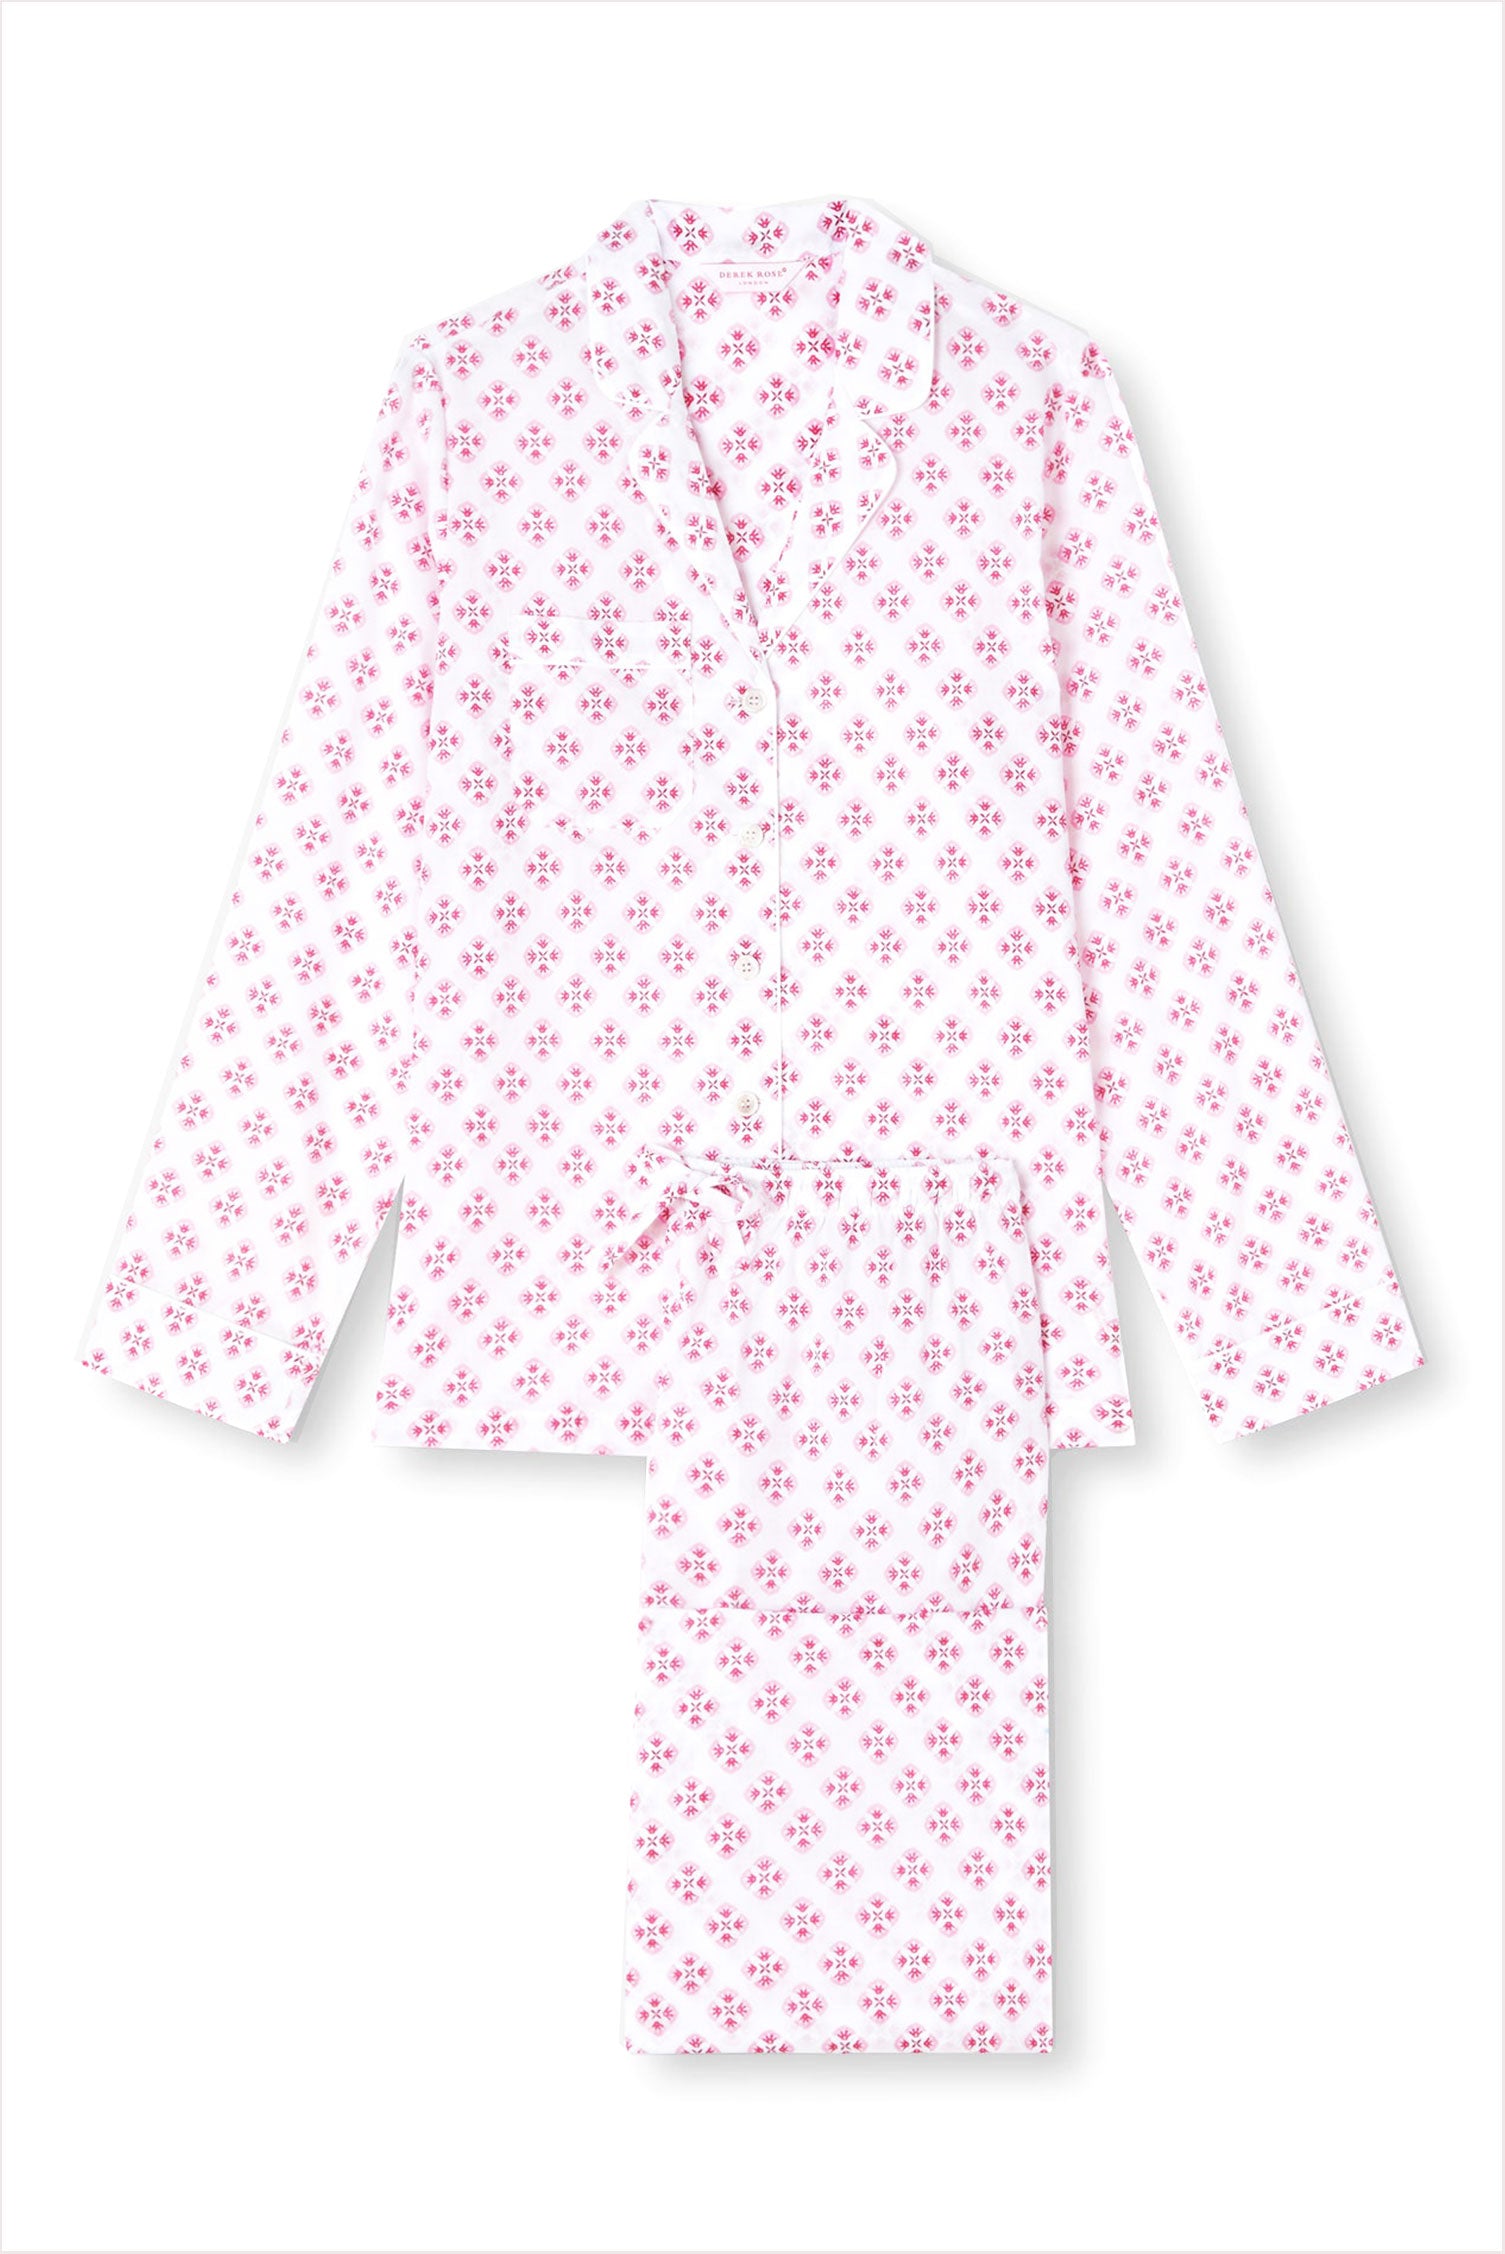 louis vuitton inspired pyjamas